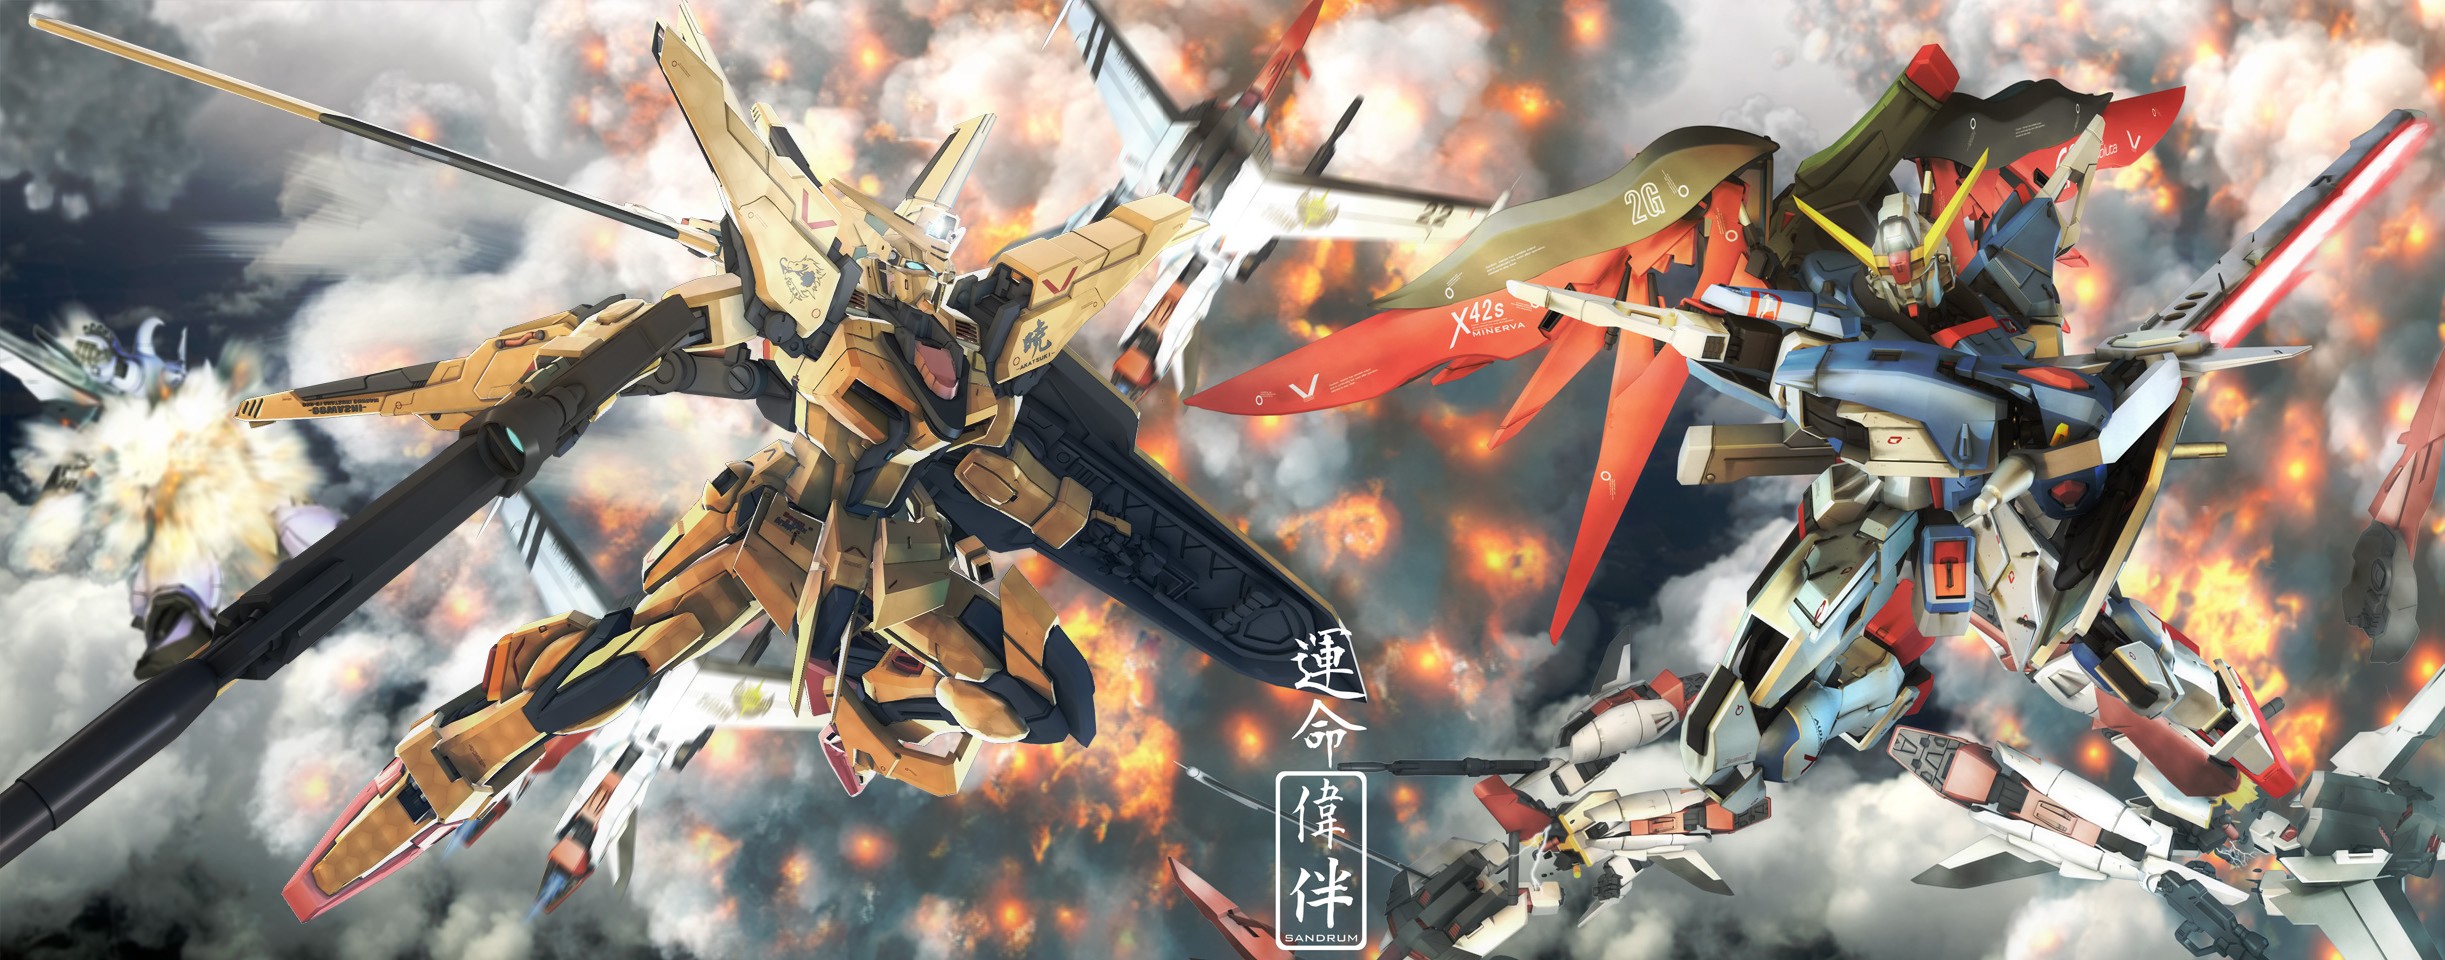 Anime 2445x960 anime Mobile Suit Gundam Gundam